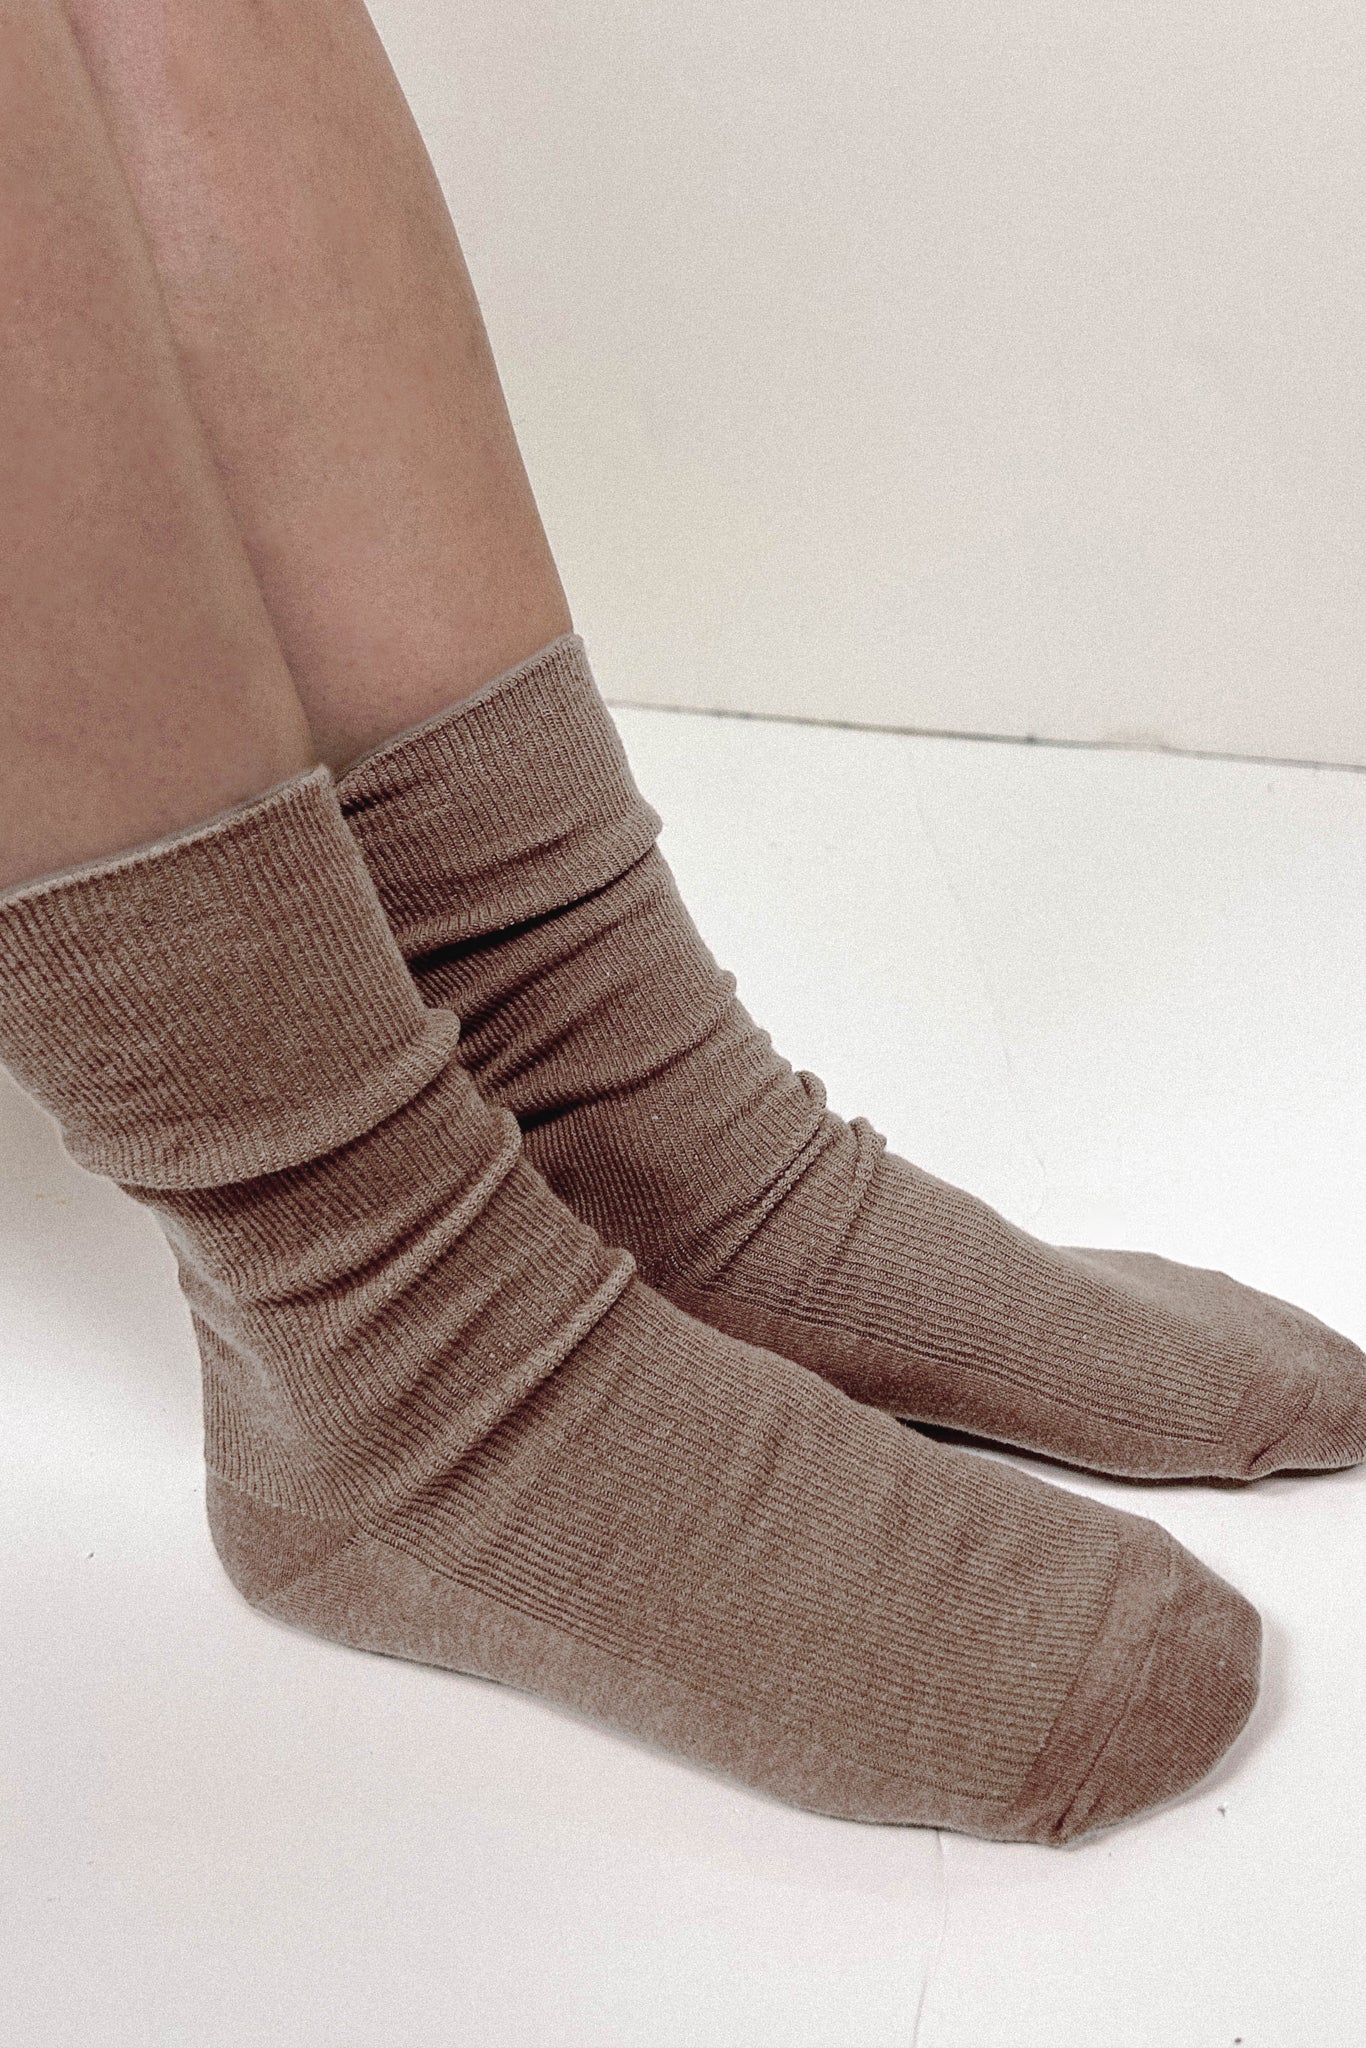 Caramel woven socks